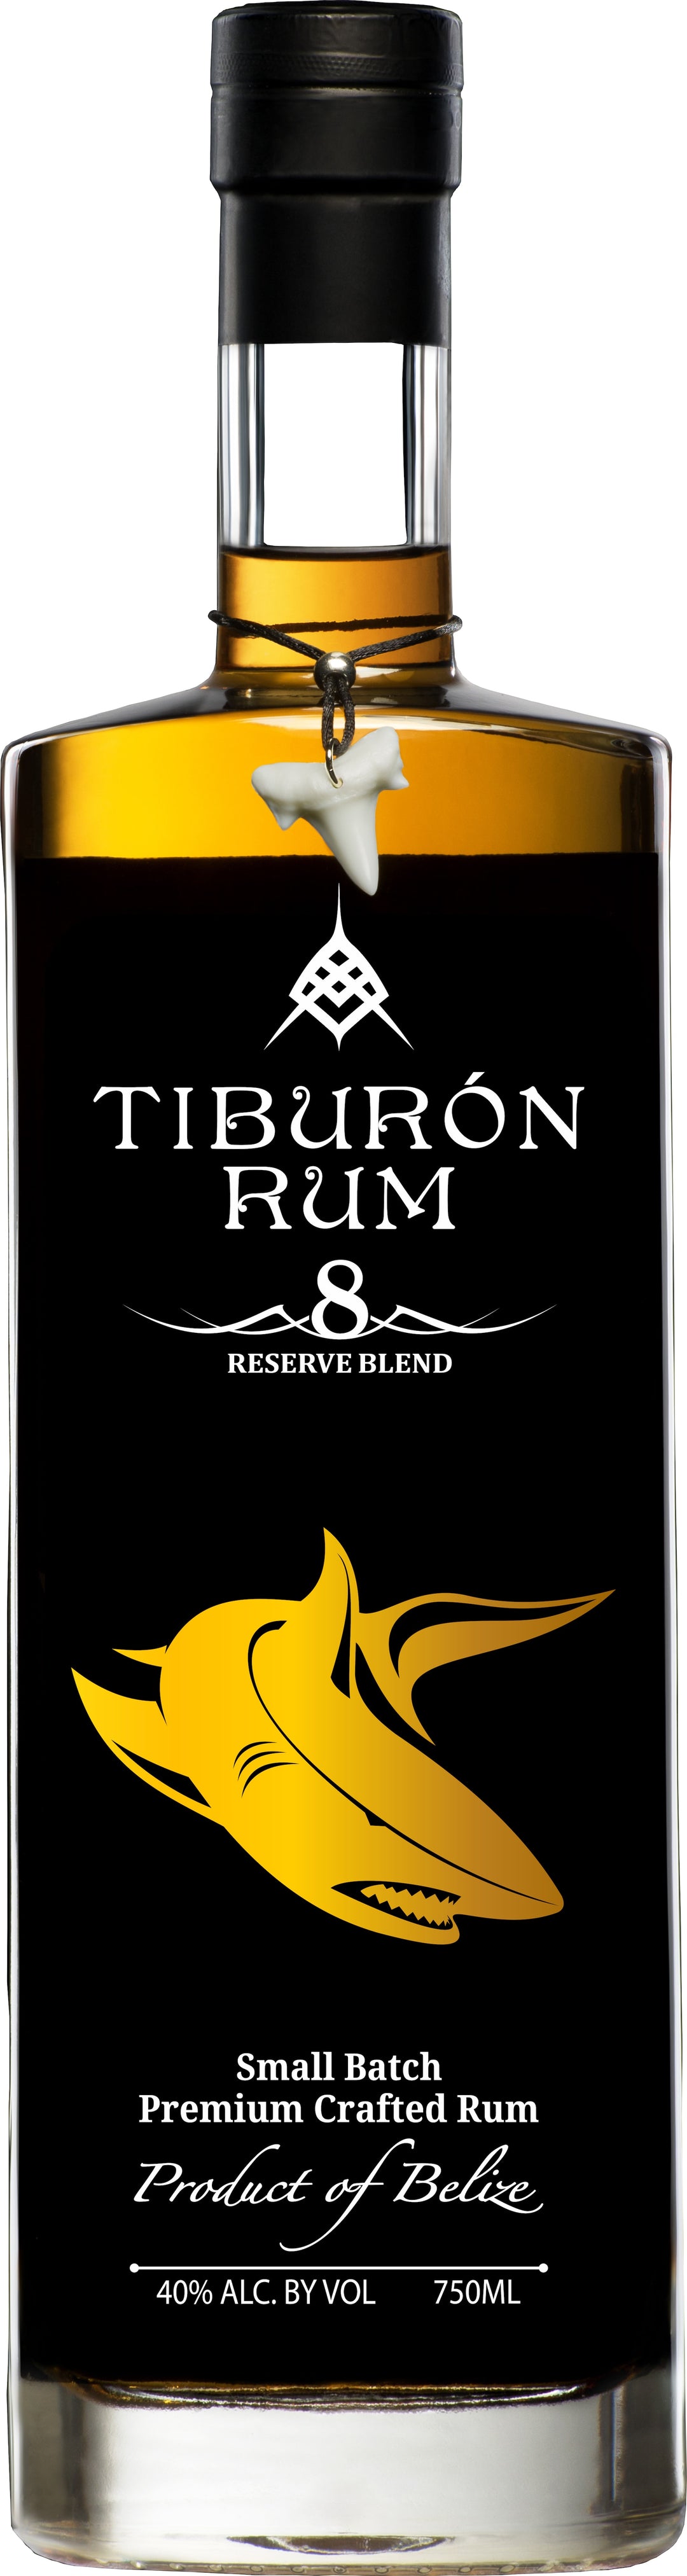 Tiburon Rum 8